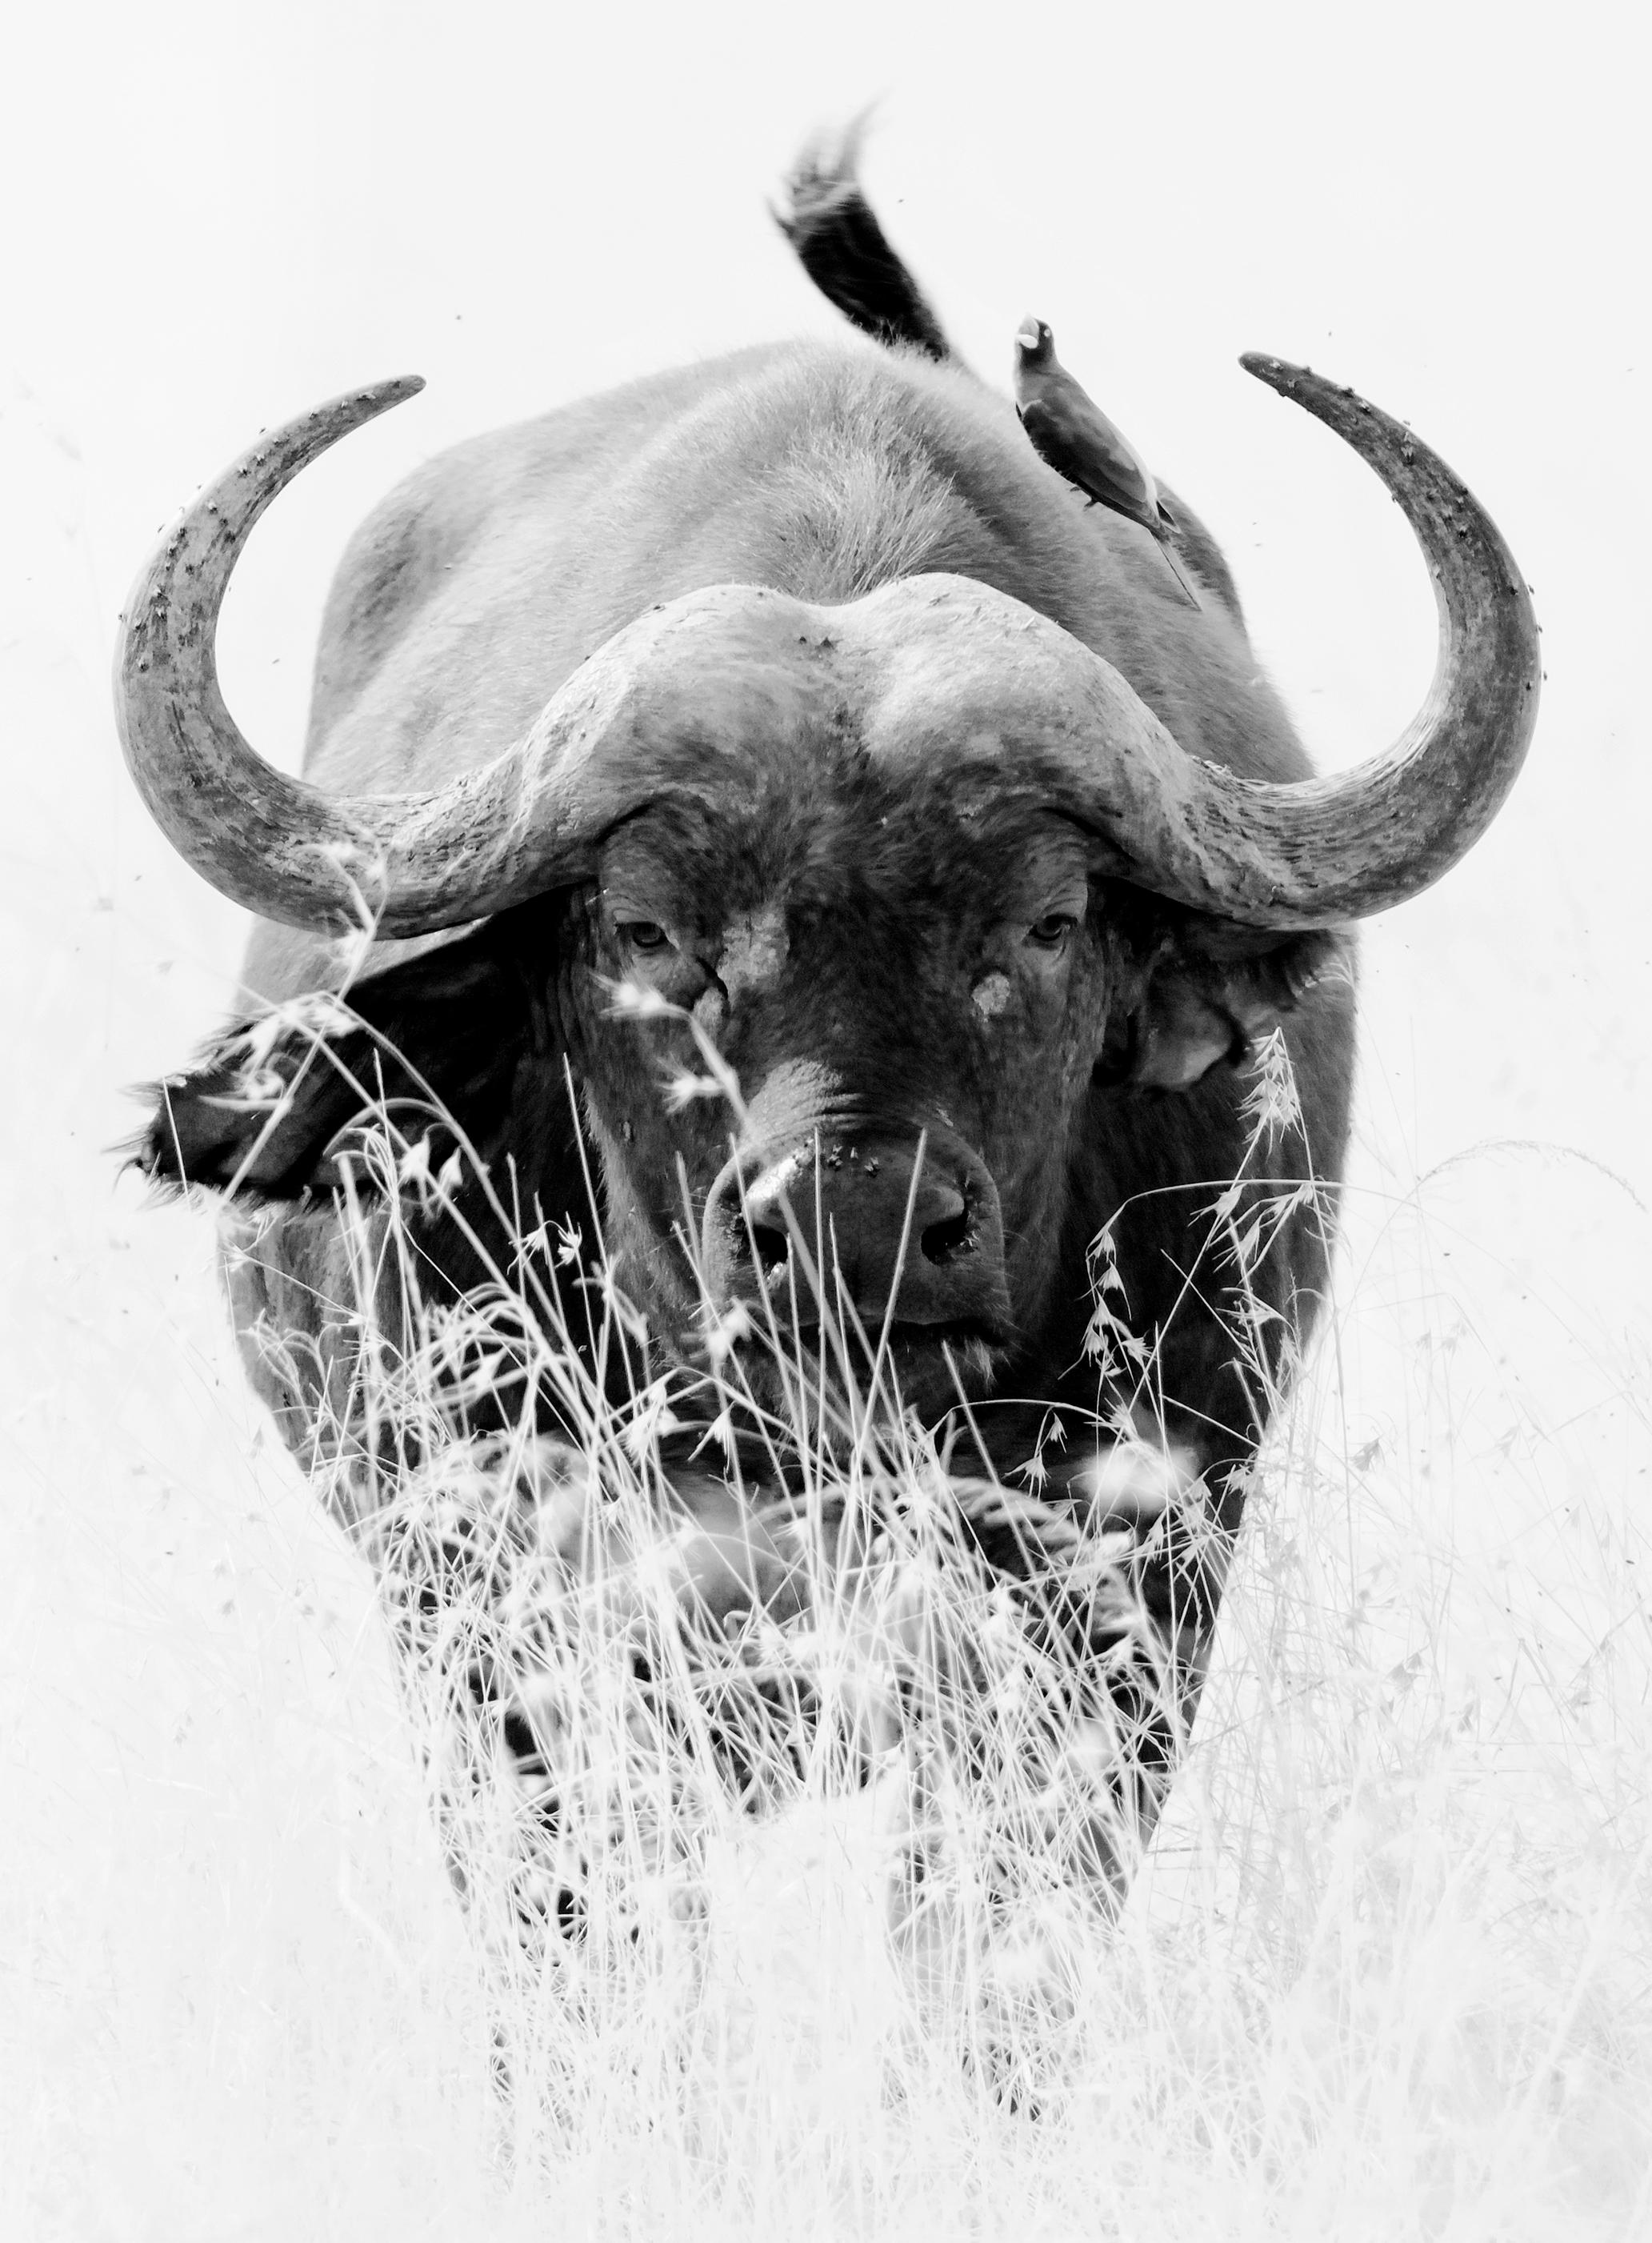 Photographie - Paysage animalier - Nature - Nature - Portrait de buffle noir et blanc - Print de Aditya Dicky Singh